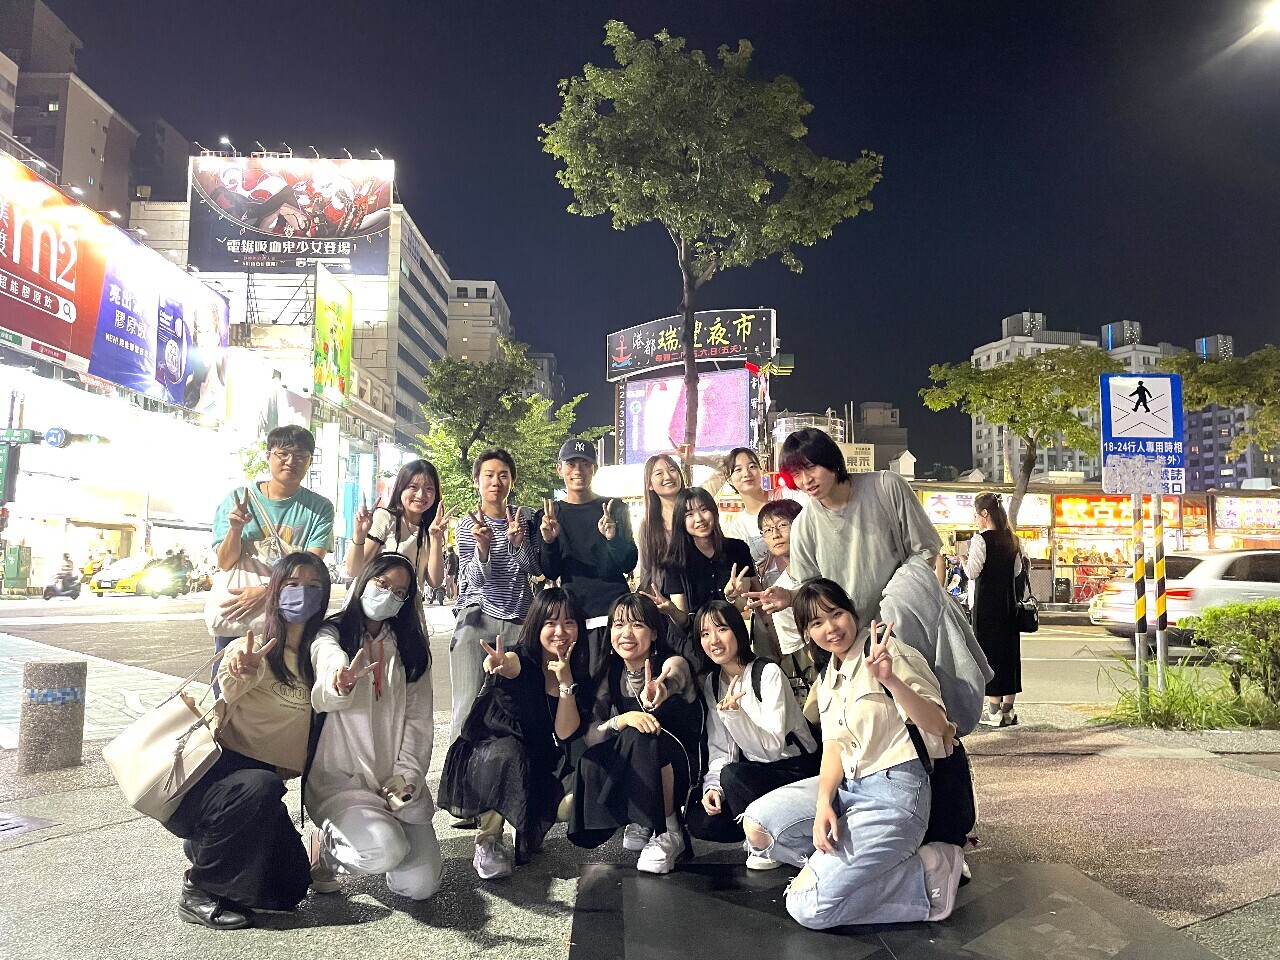 Sinh viên ĐH I-Shou dẫn các bạn sinh viên ĐH Kansai Nhật Bản tới chợ đêm Ruifeng Cao Hùng, trải nghiệm văn hóa chợ đêm của Đài Loan (ảnh: ĐH I-Shou cung cấp)